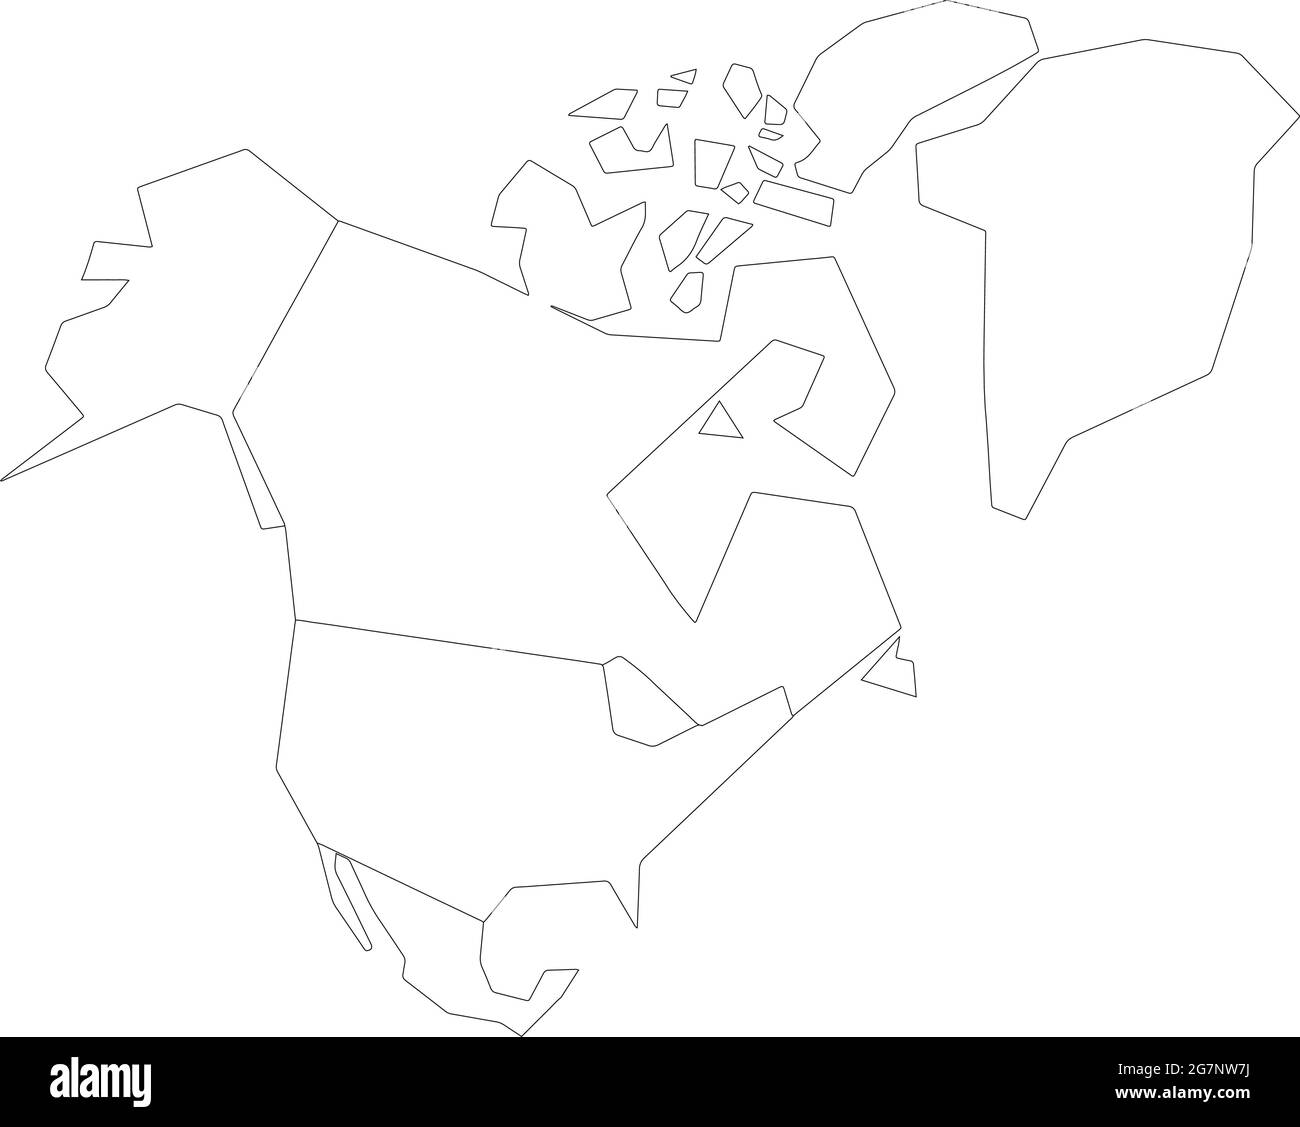 Vektorkarte von Nordamerika, farblos mit Umriss, schwarz und weiß zu studieren Stock Vektor